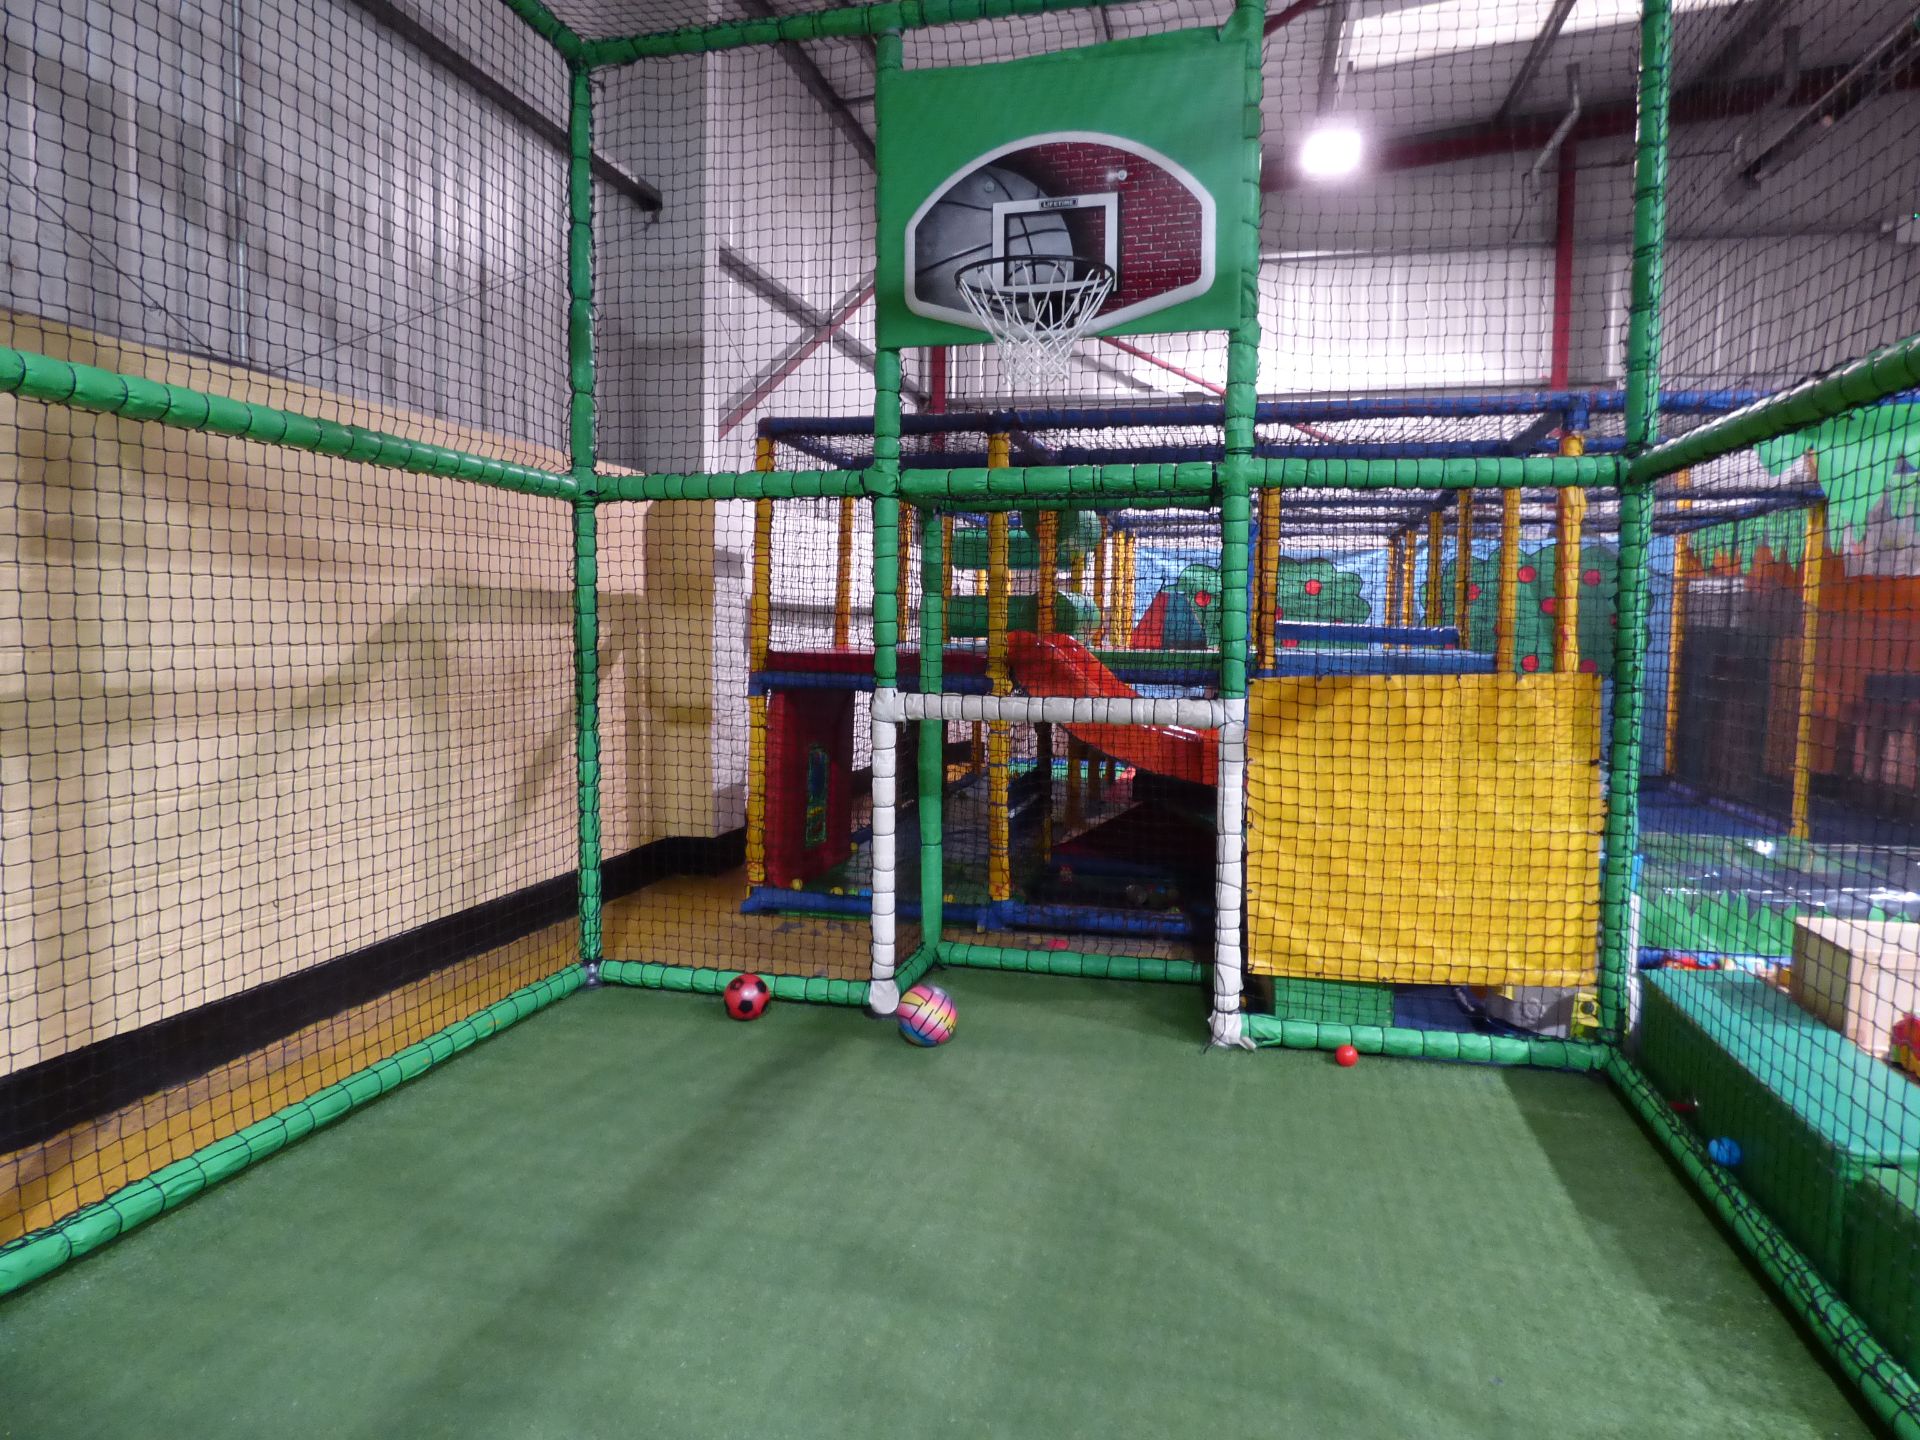 Football/Netball (Basketball) Court Area - Image 3 of 8